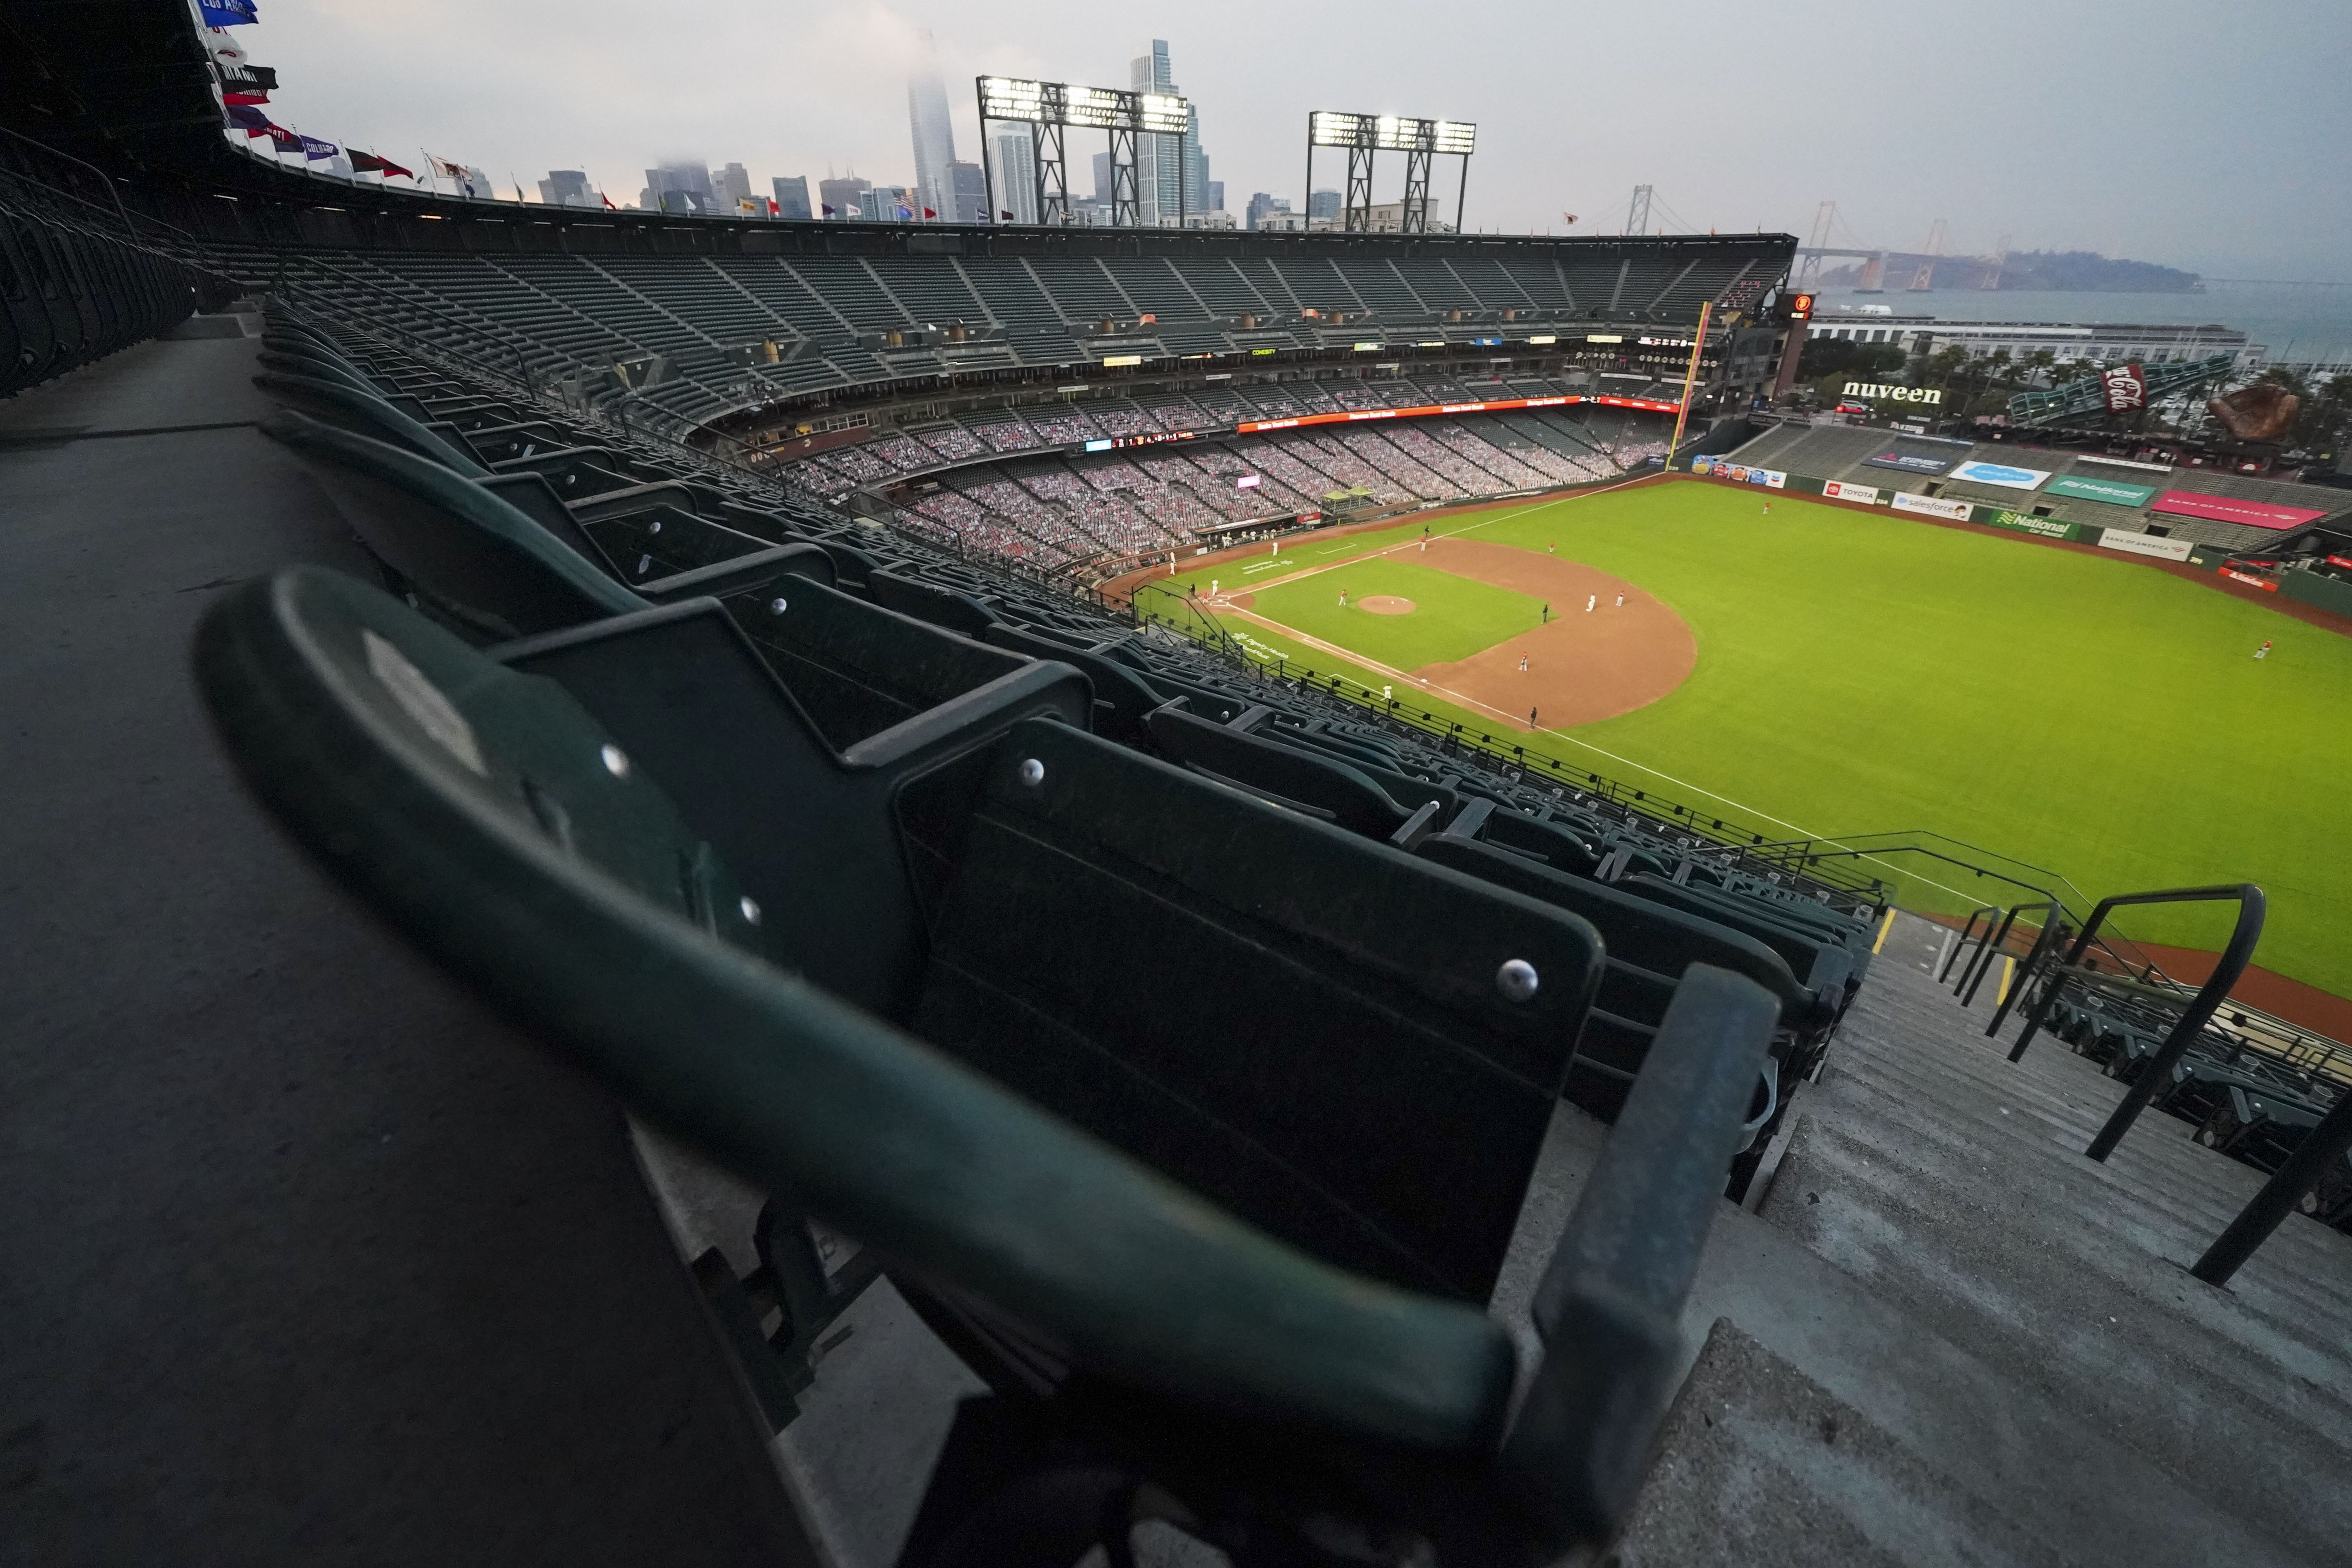 El Oracle Park tiene capacidad para 42 mil 300 personas y es casa de los Giants de San Francisco (Foto: Kyle Terada/REUTERS)